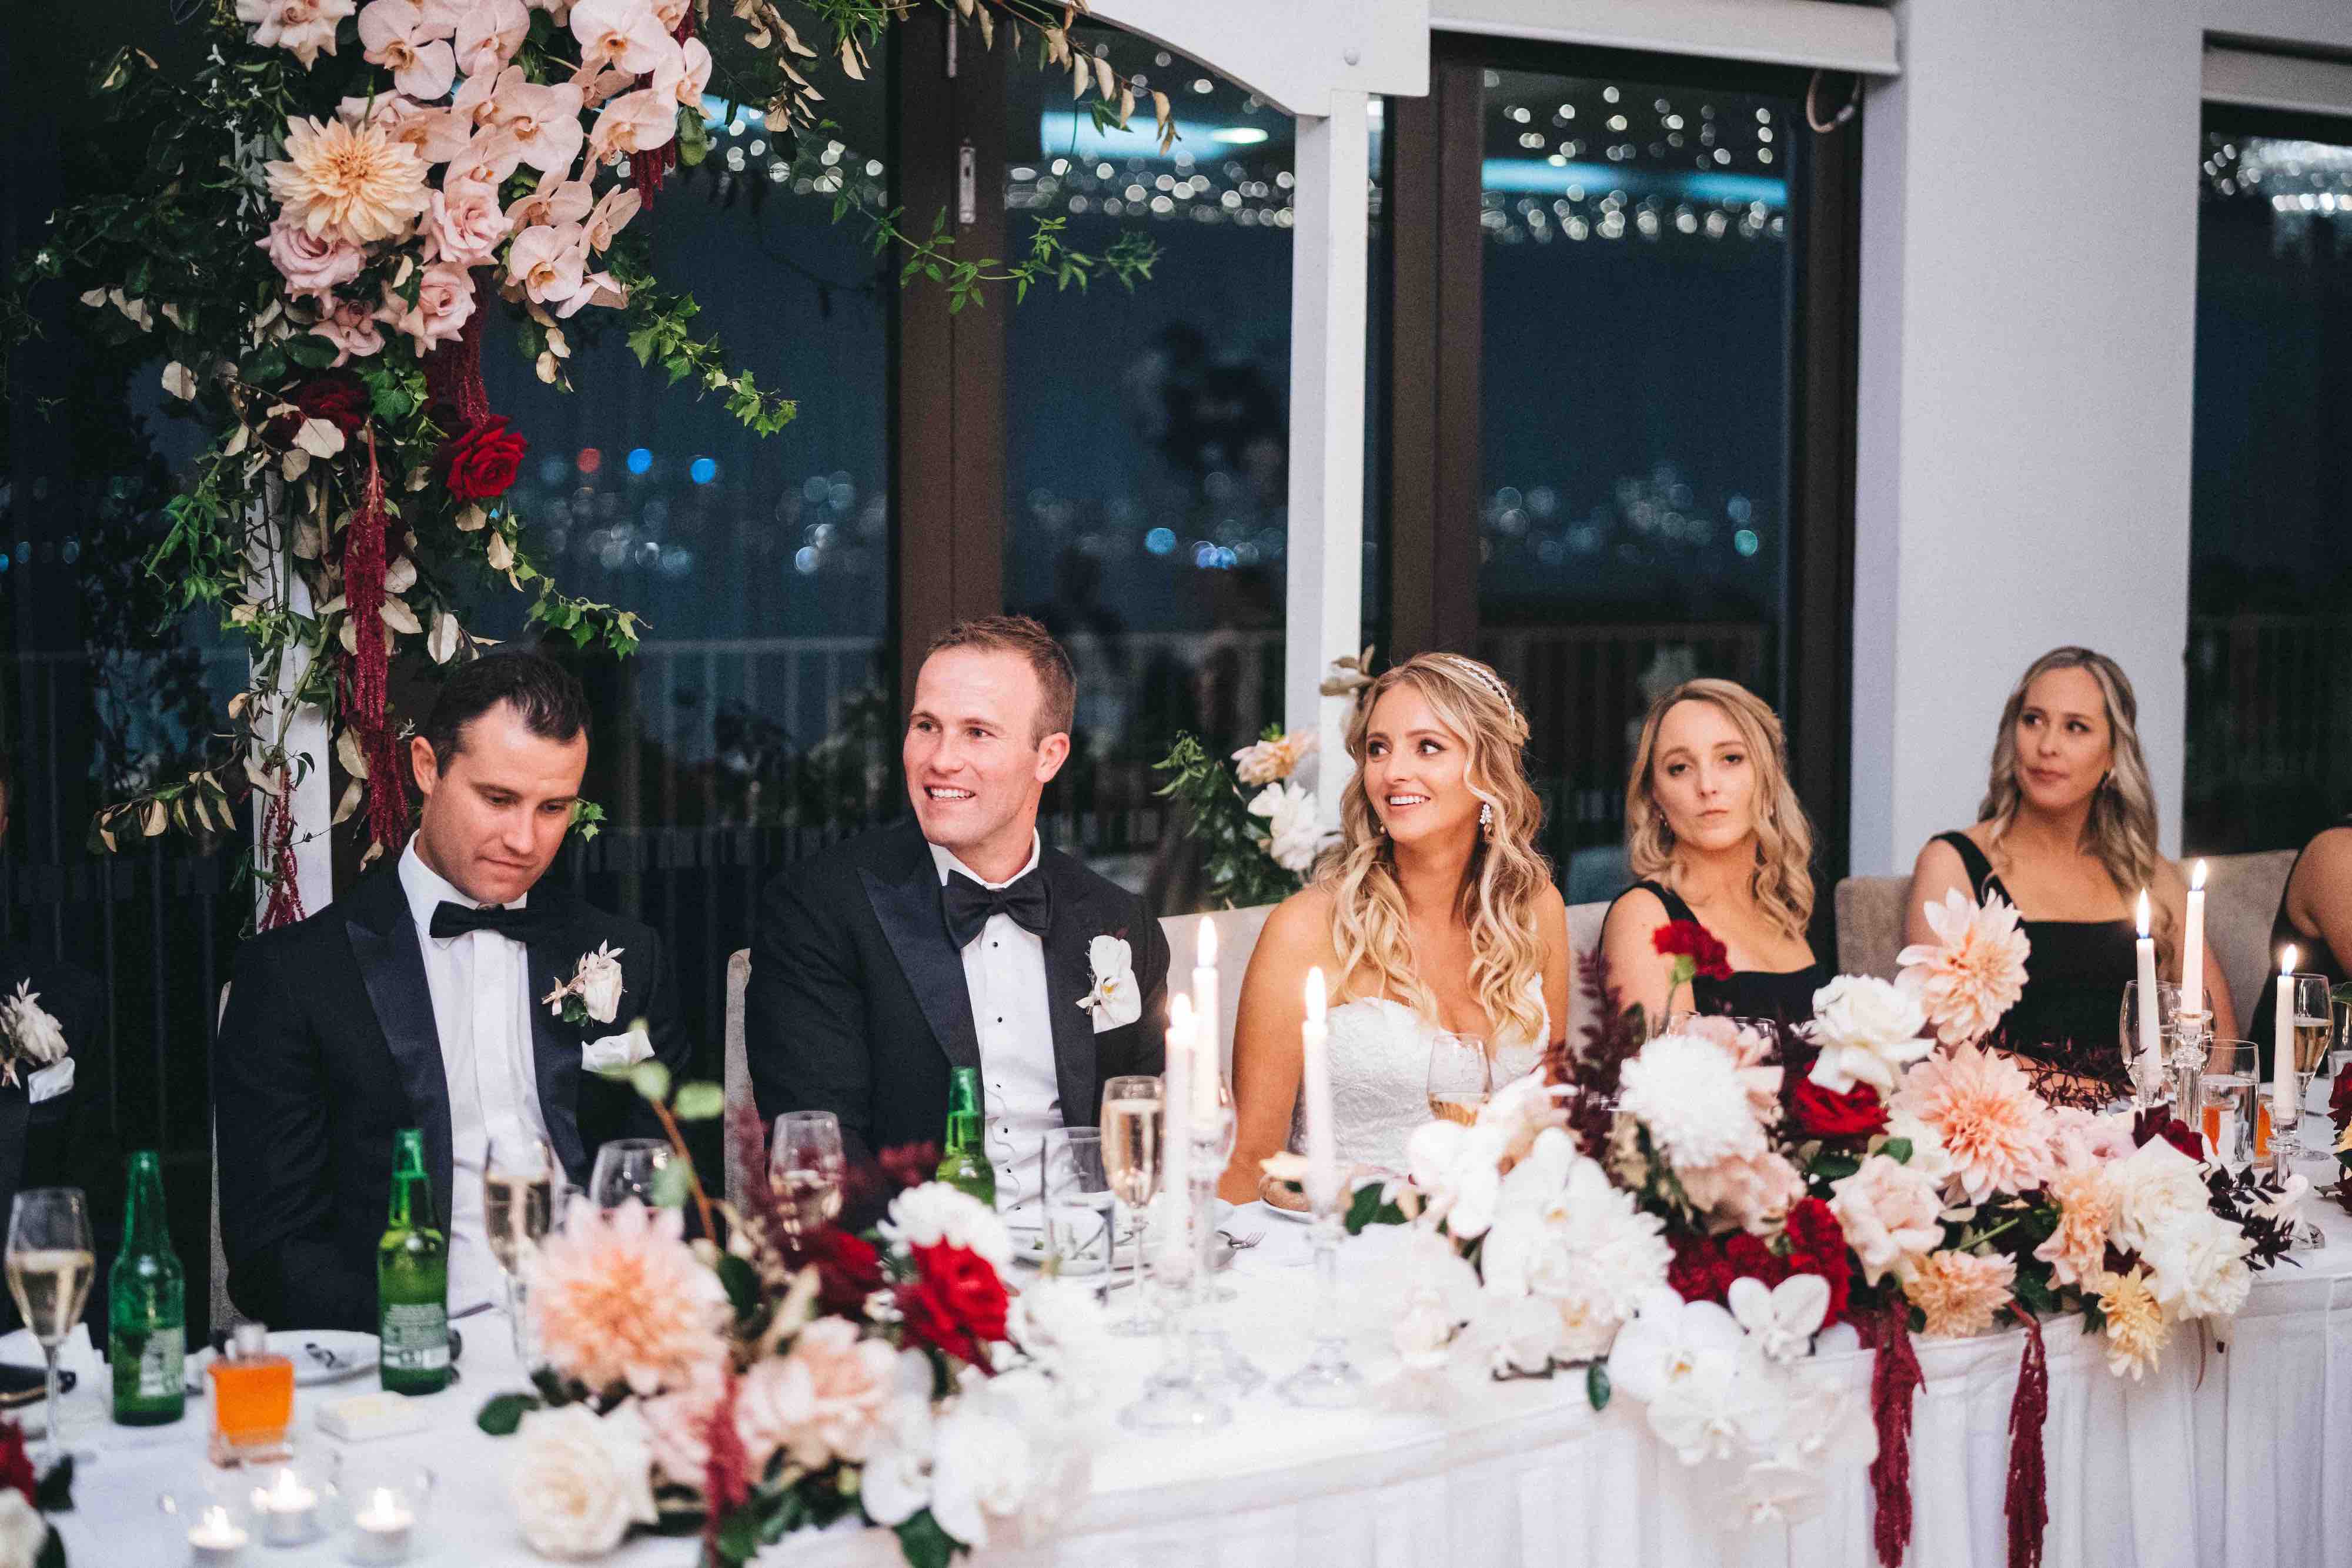 bridal party at wedding sergeants mess mosman sydney